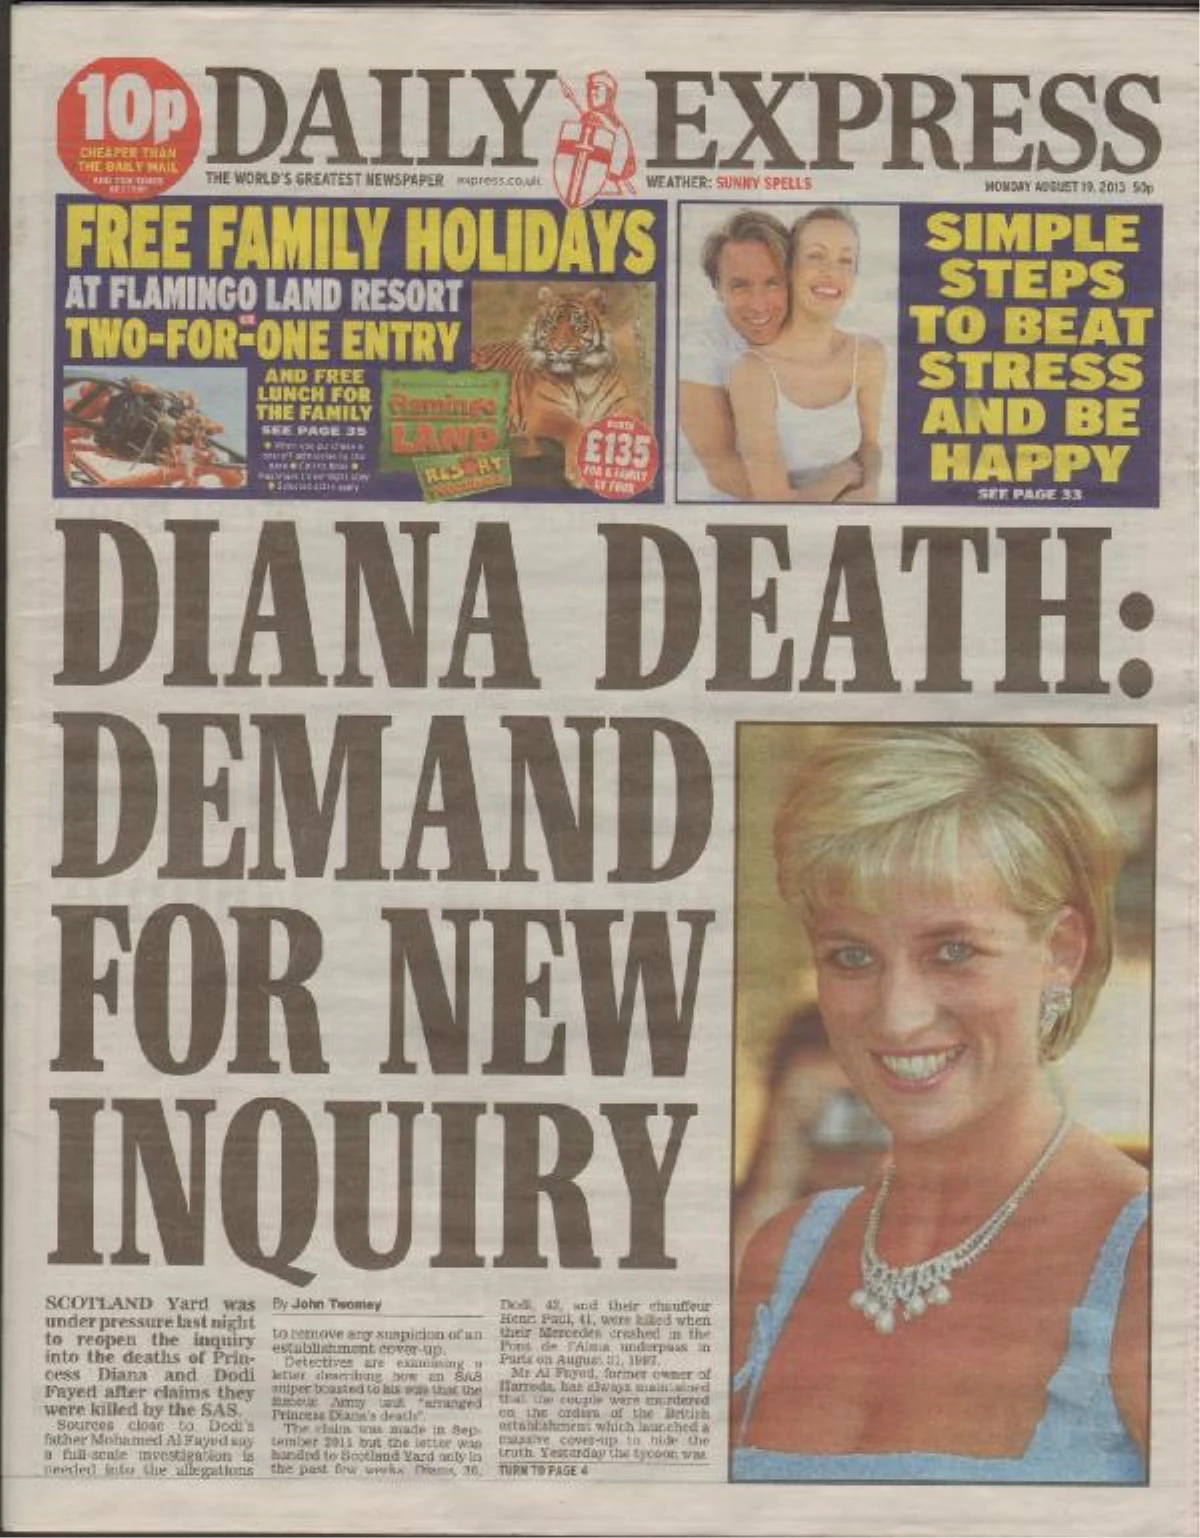 Daıly Express Gazetesi Dıana\'nın Ölümü ile İlgili Yeni Soruşturma Açılması İçin Kampanya Başlattı